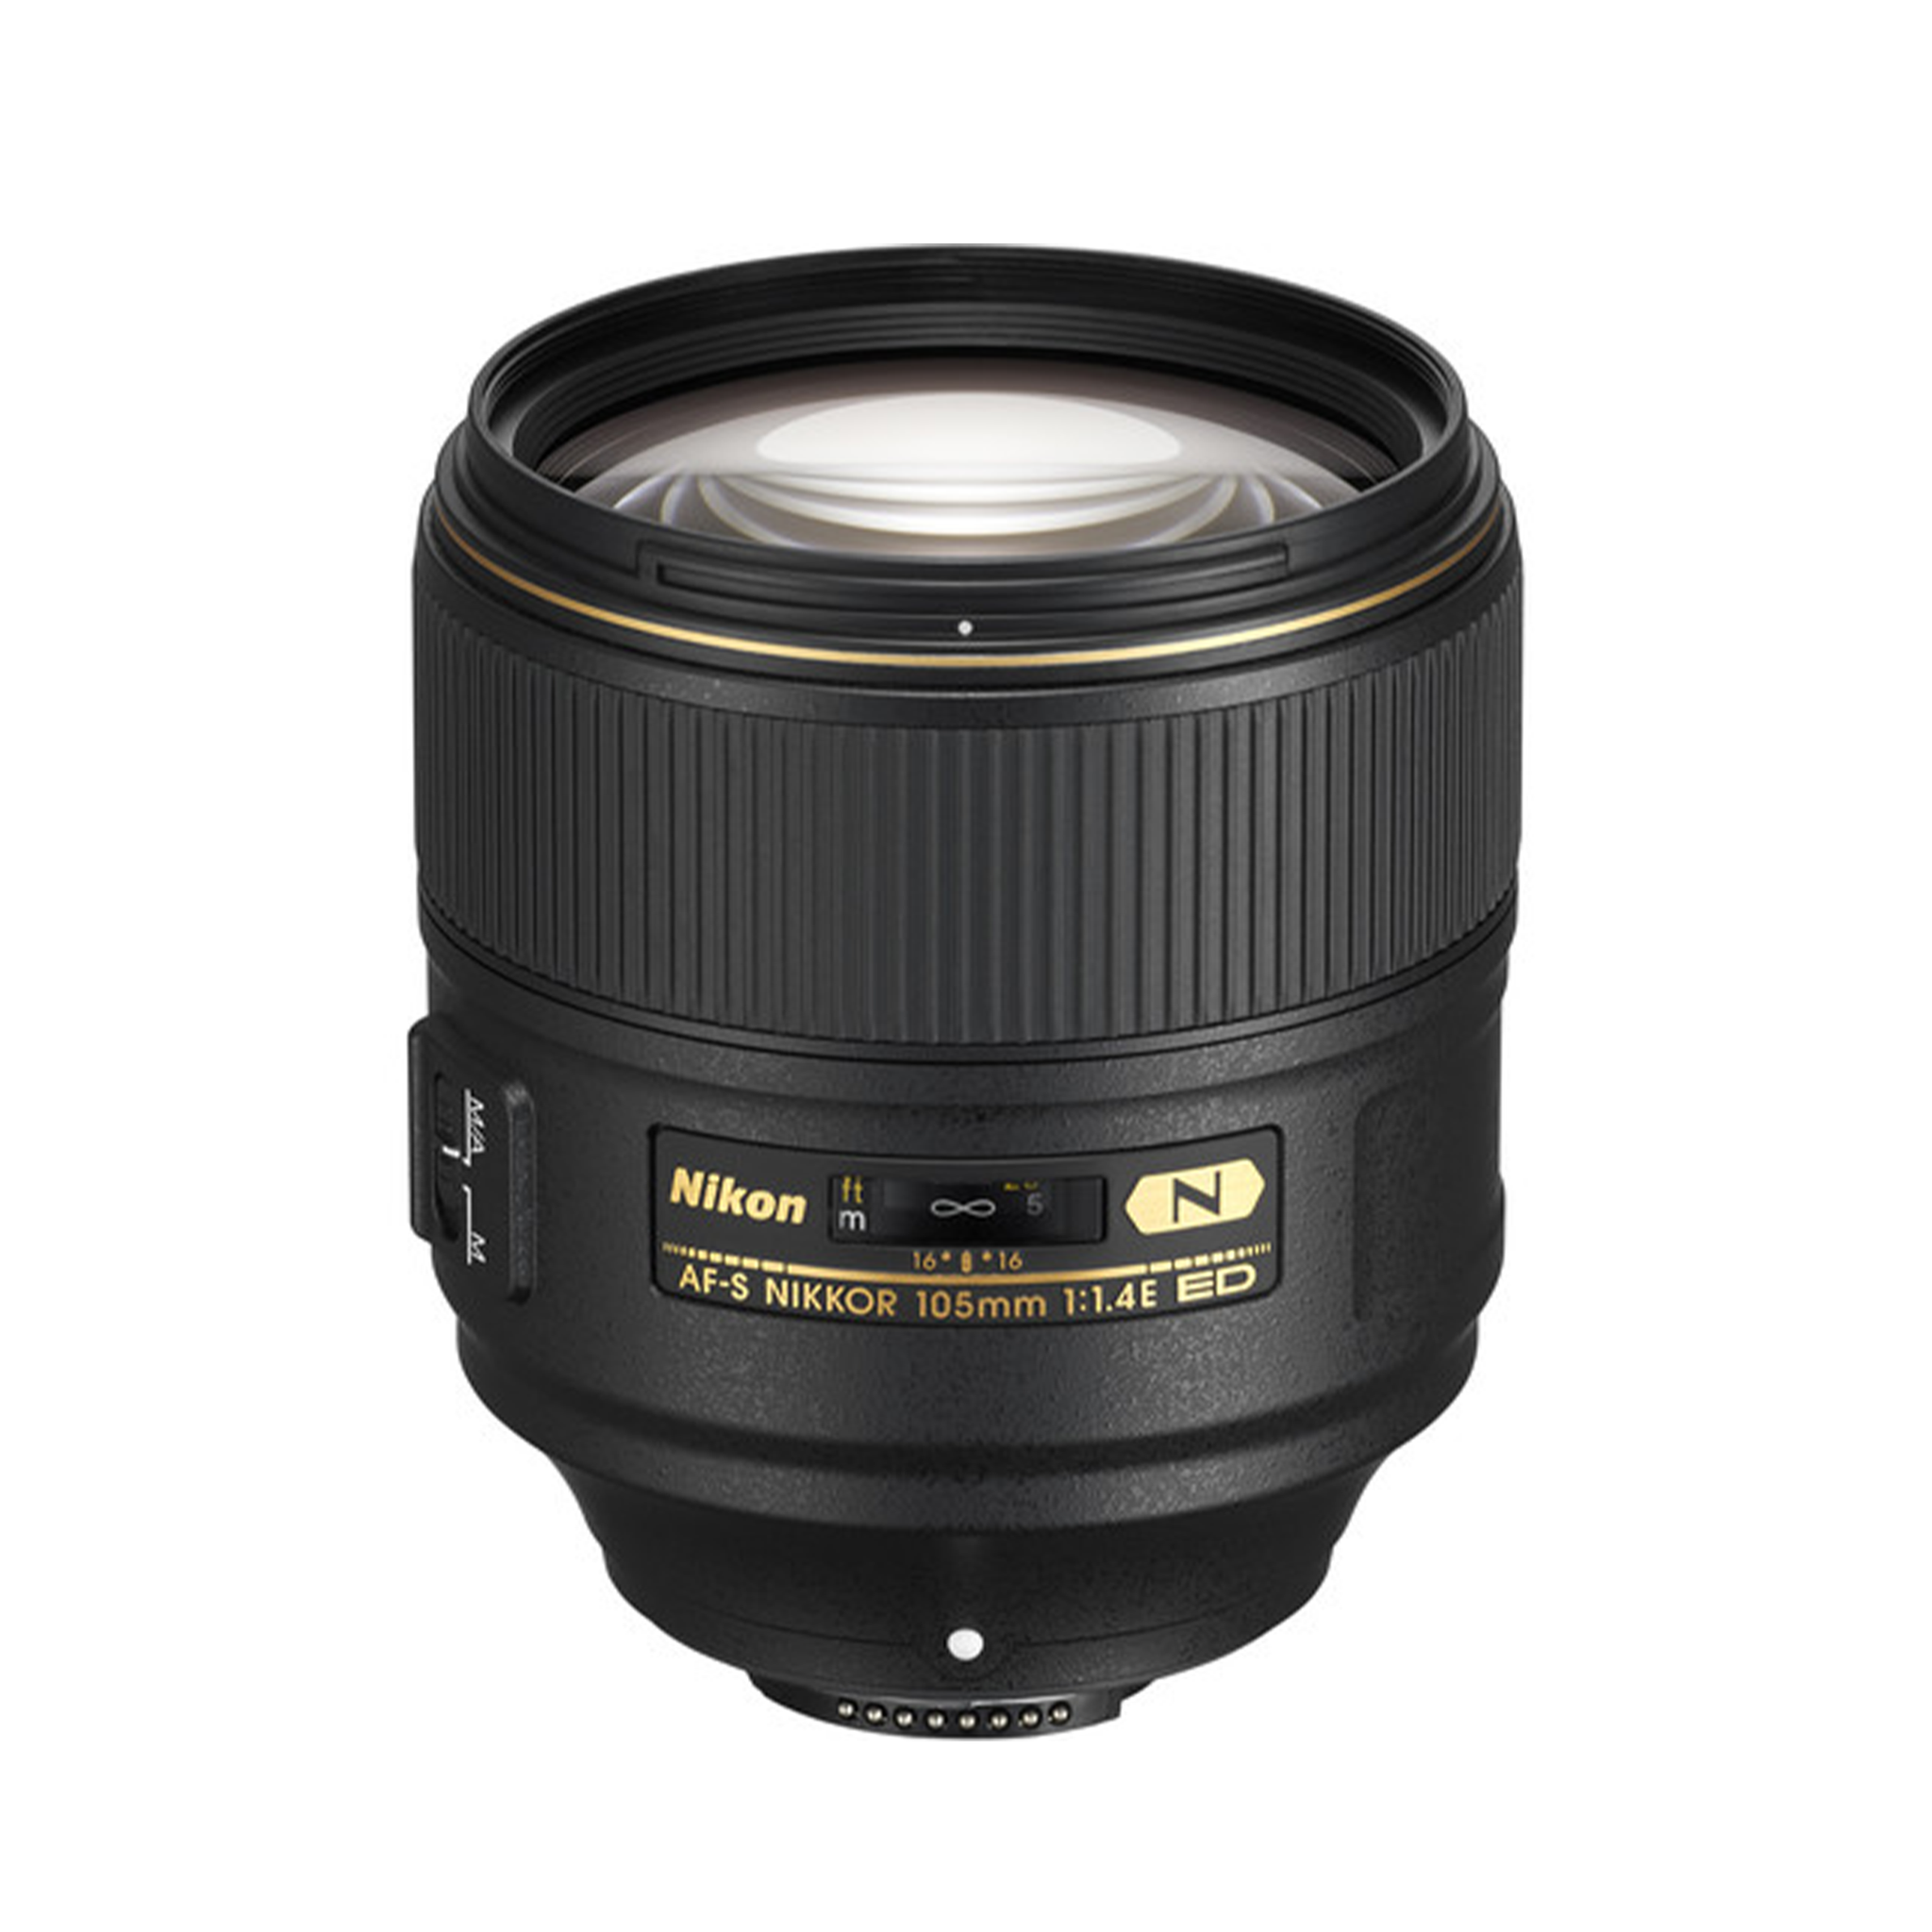 Nikon AF-S NIKKOR 105mm f/1.4E ED Lens-Camera Lenses-futuromic